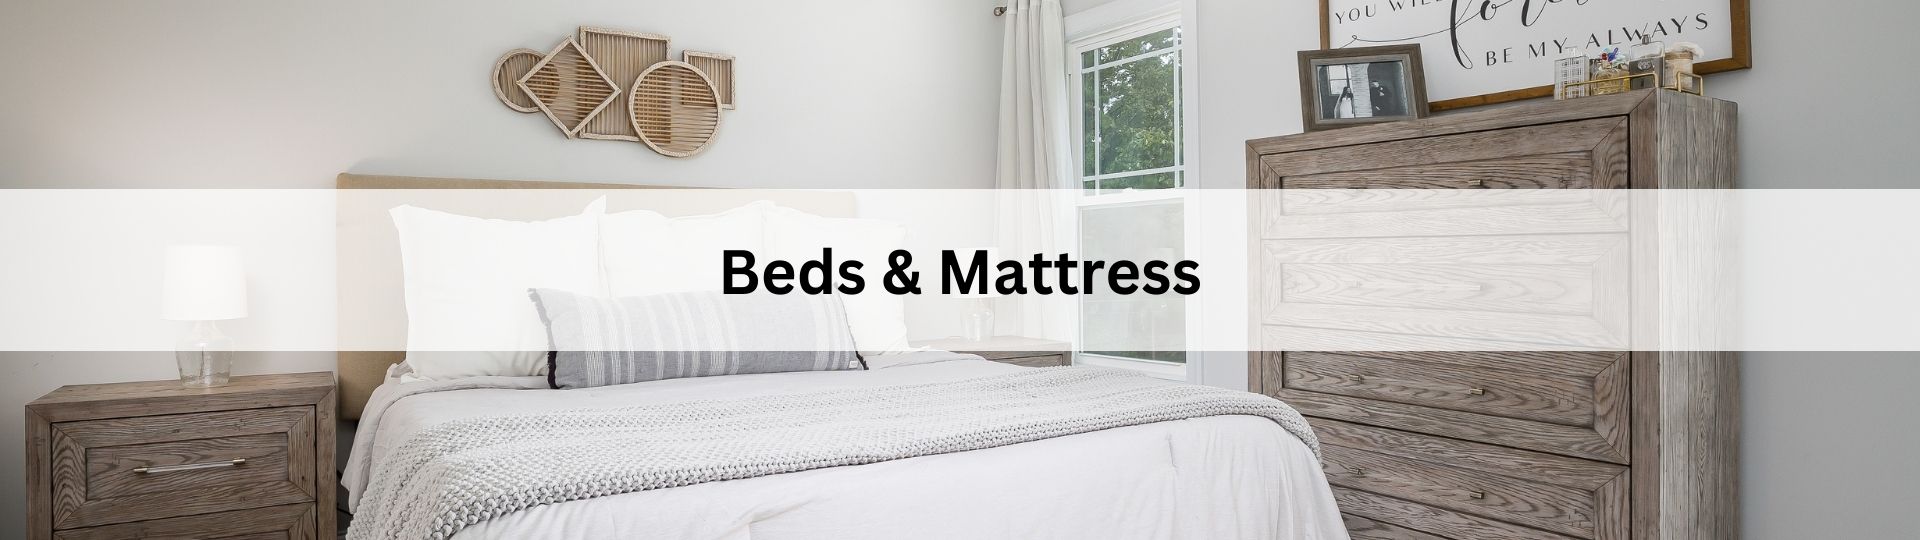 BEDS & MATTRESS